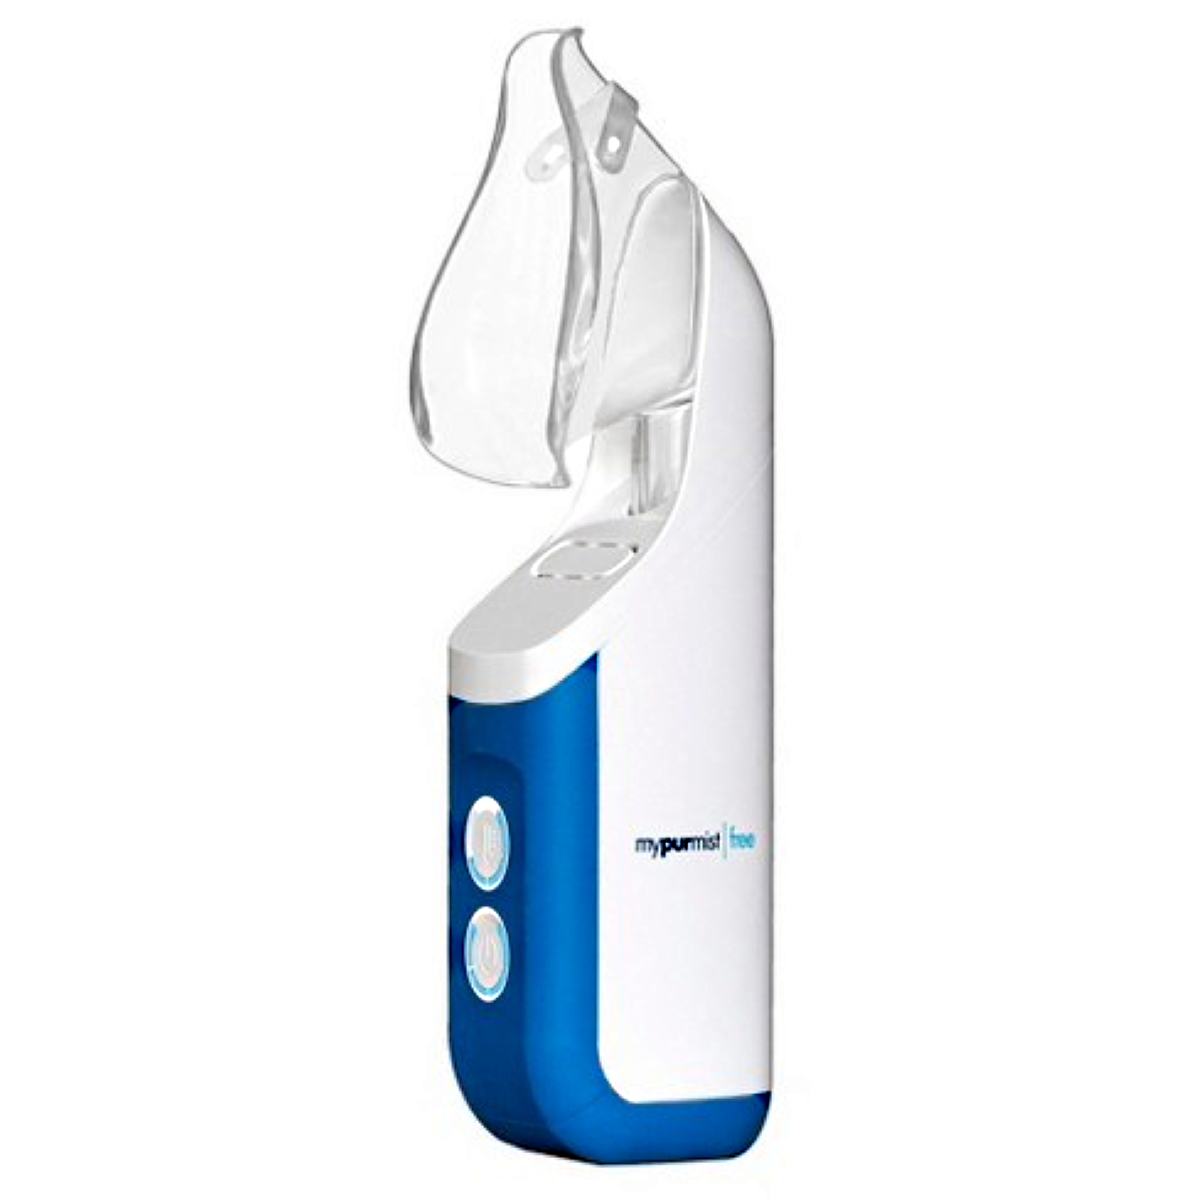 Mypurmist Free Cordless Ultrapure Steam Inhaler